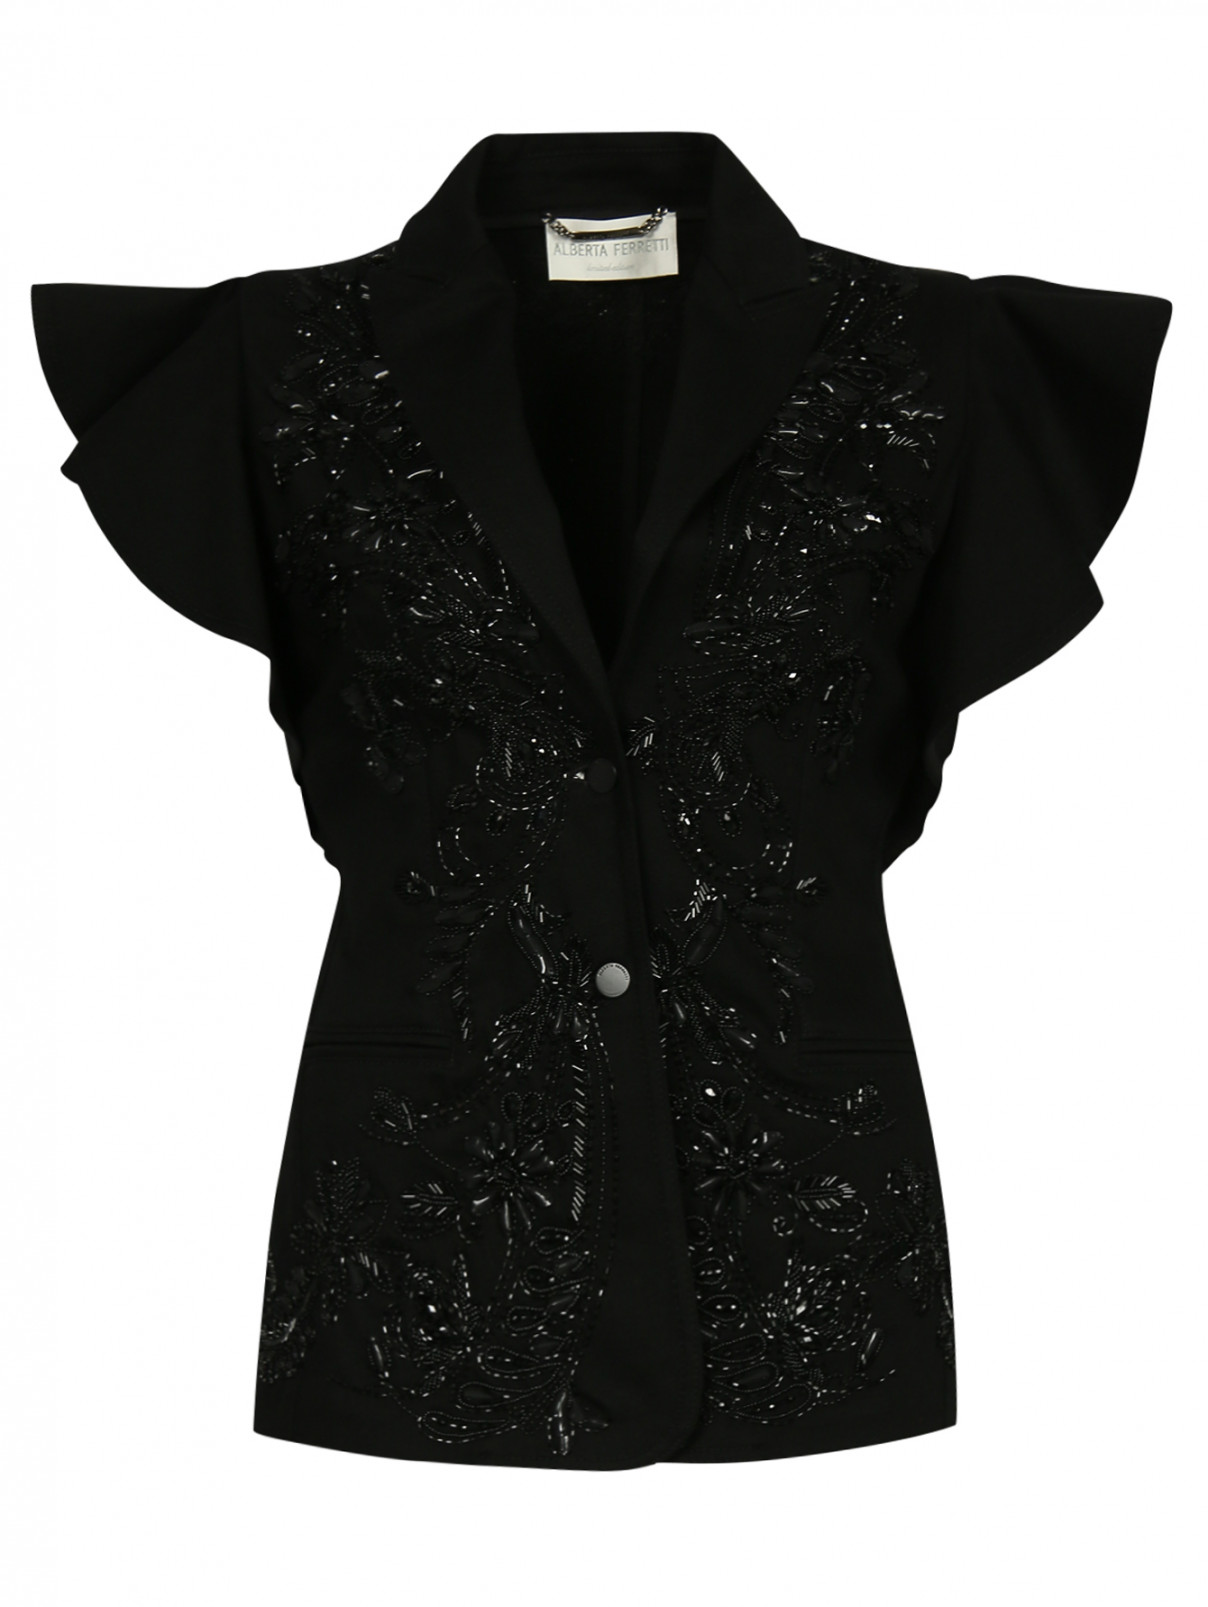 Жакет с коротким рукавом декорированный вышивкой Alberta Ferretti  –  Общий вид  – Цвет:  Черный